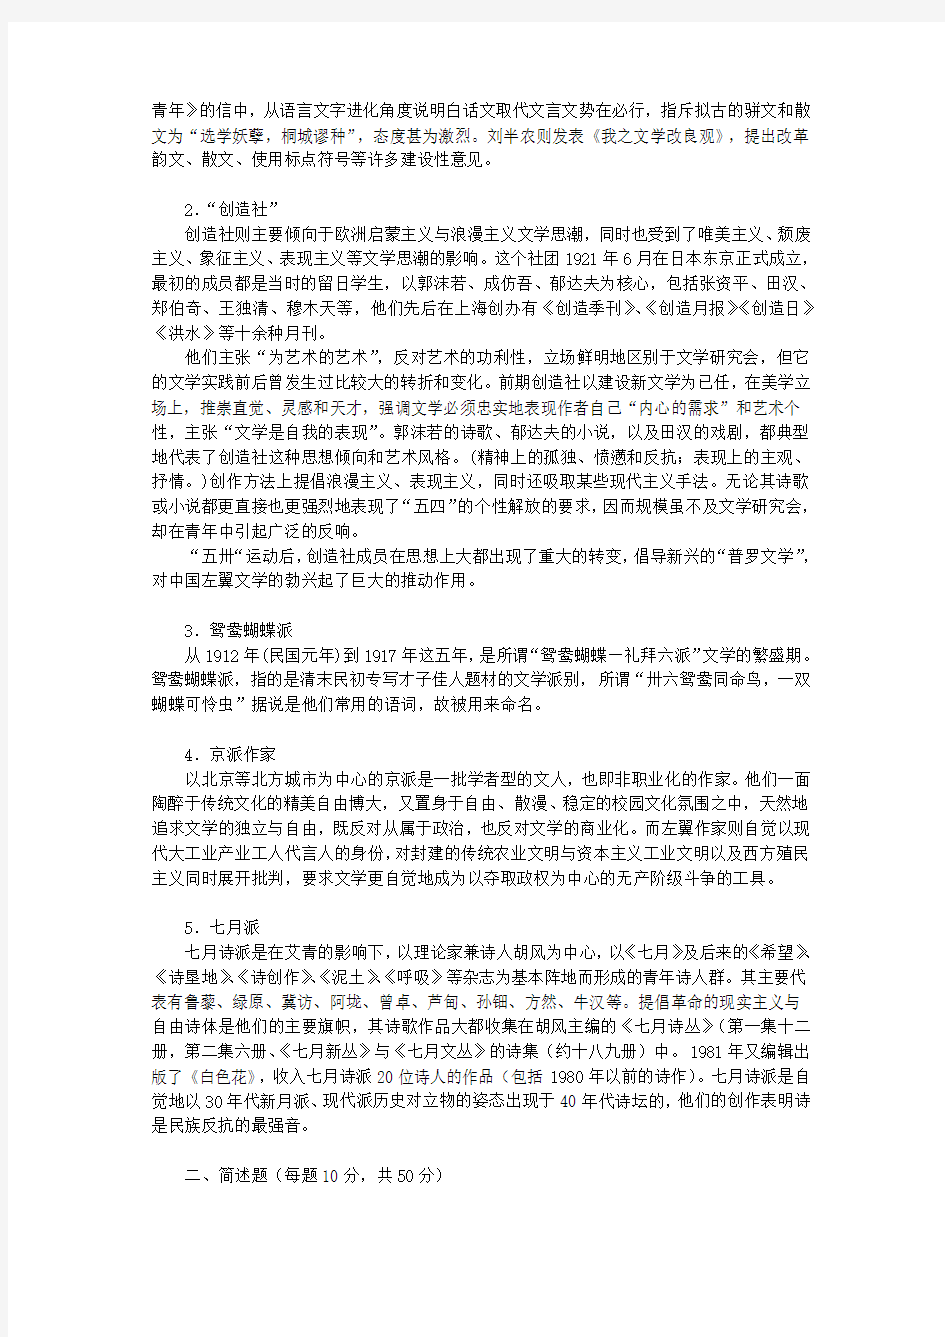 南京大学中国现当代文学史(上)期末考试试卷(附答案)